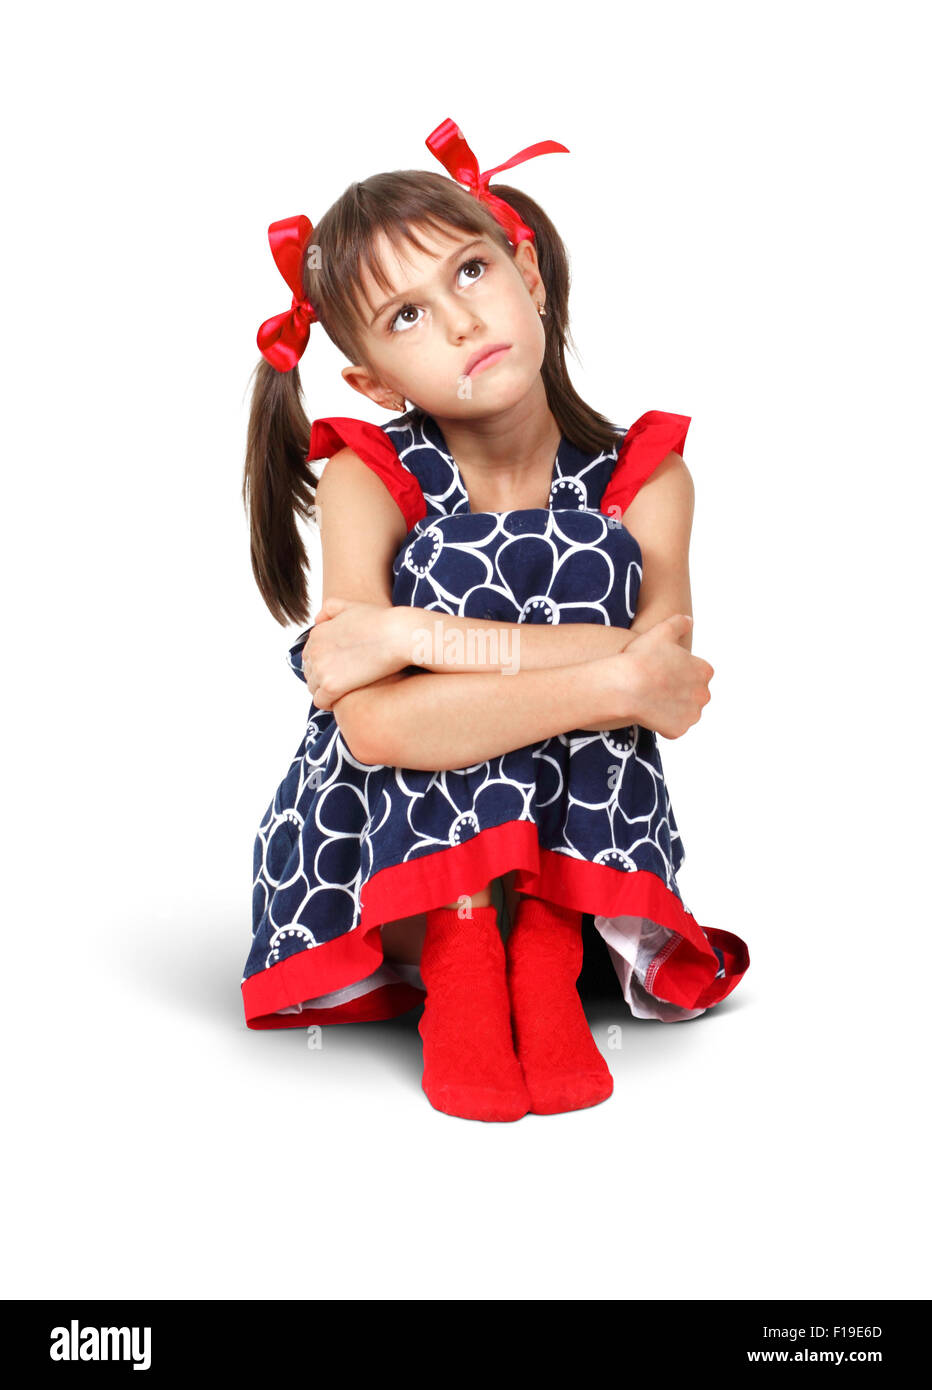 Udienza triste, riflessivo bambino ragazza con centine rosso su bianco Foto Stock